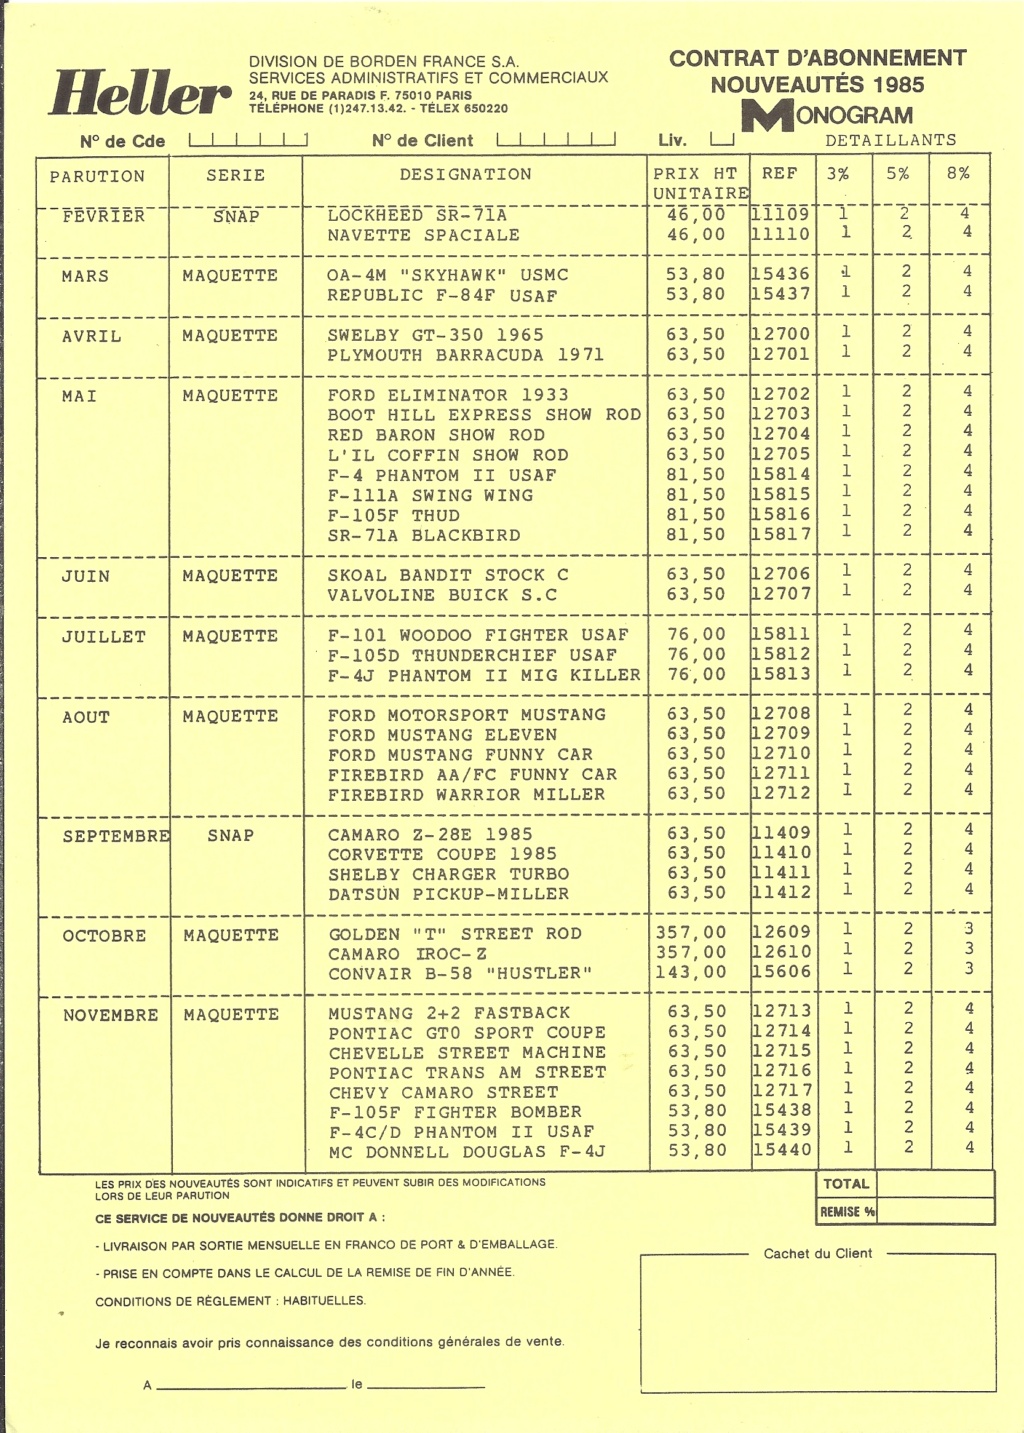 [1985] Pochette détaillant HELLER HUMBROL avec catalogues et tarif revendeur 1985  Hell3945